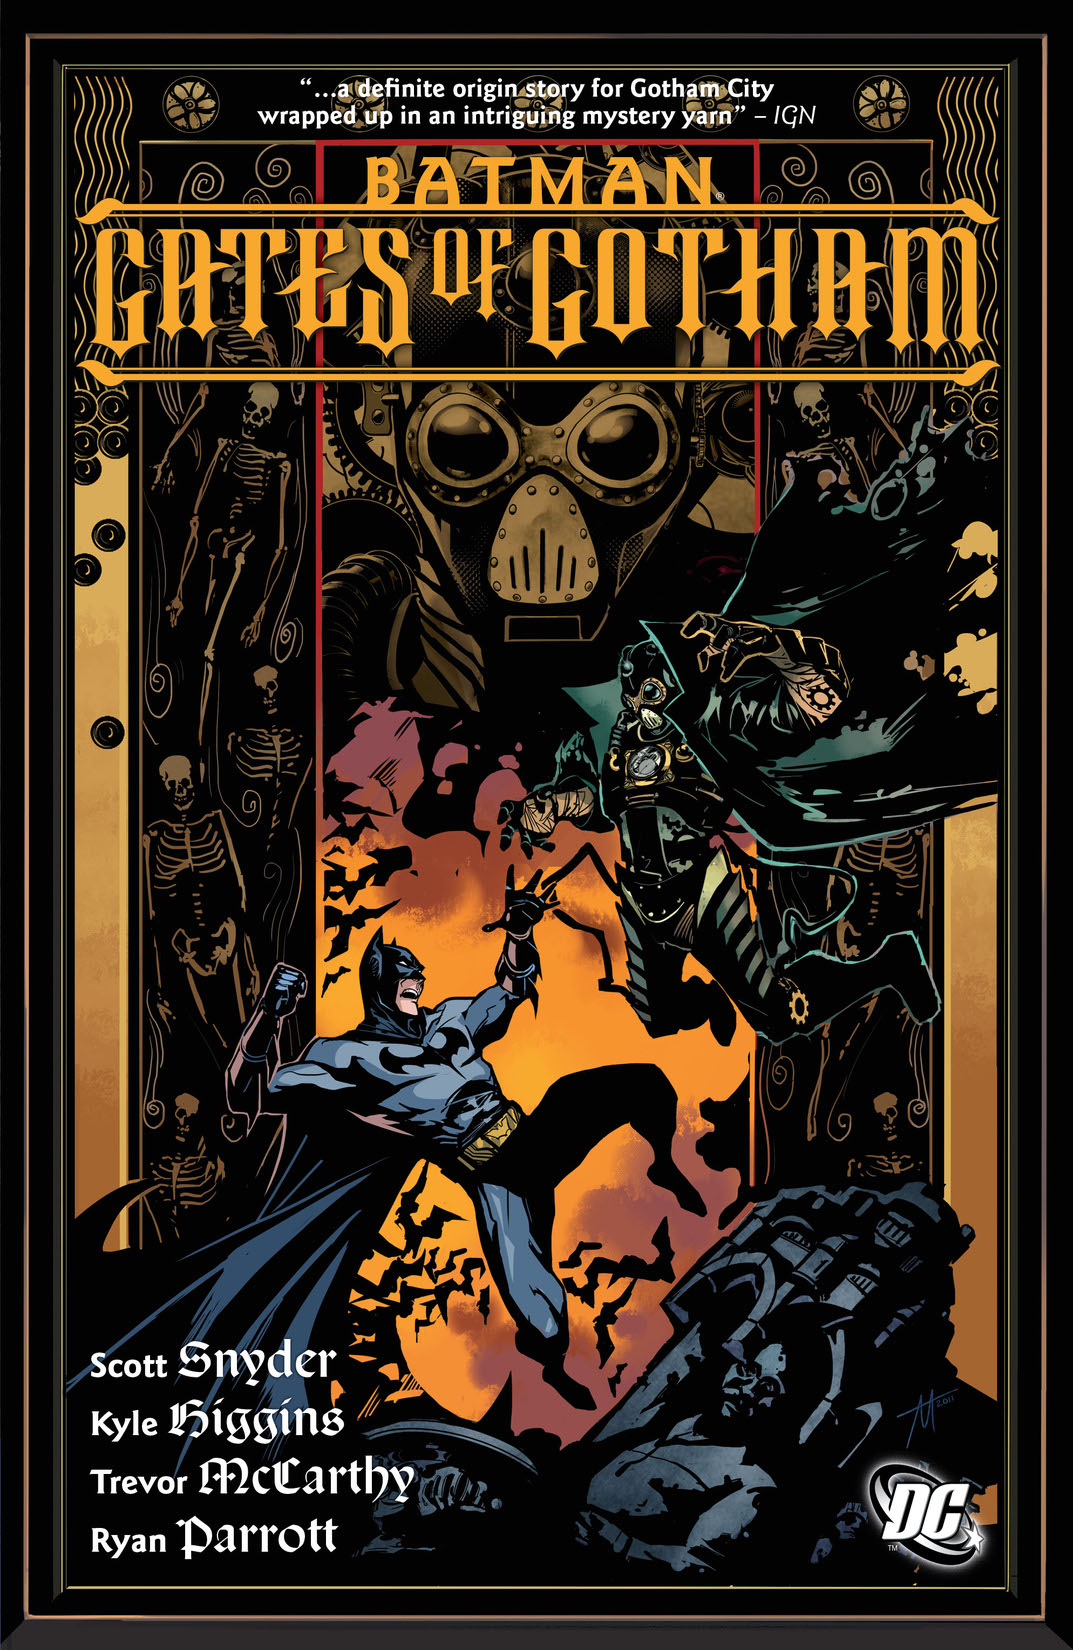 Batman: Gates of Gotham preview images